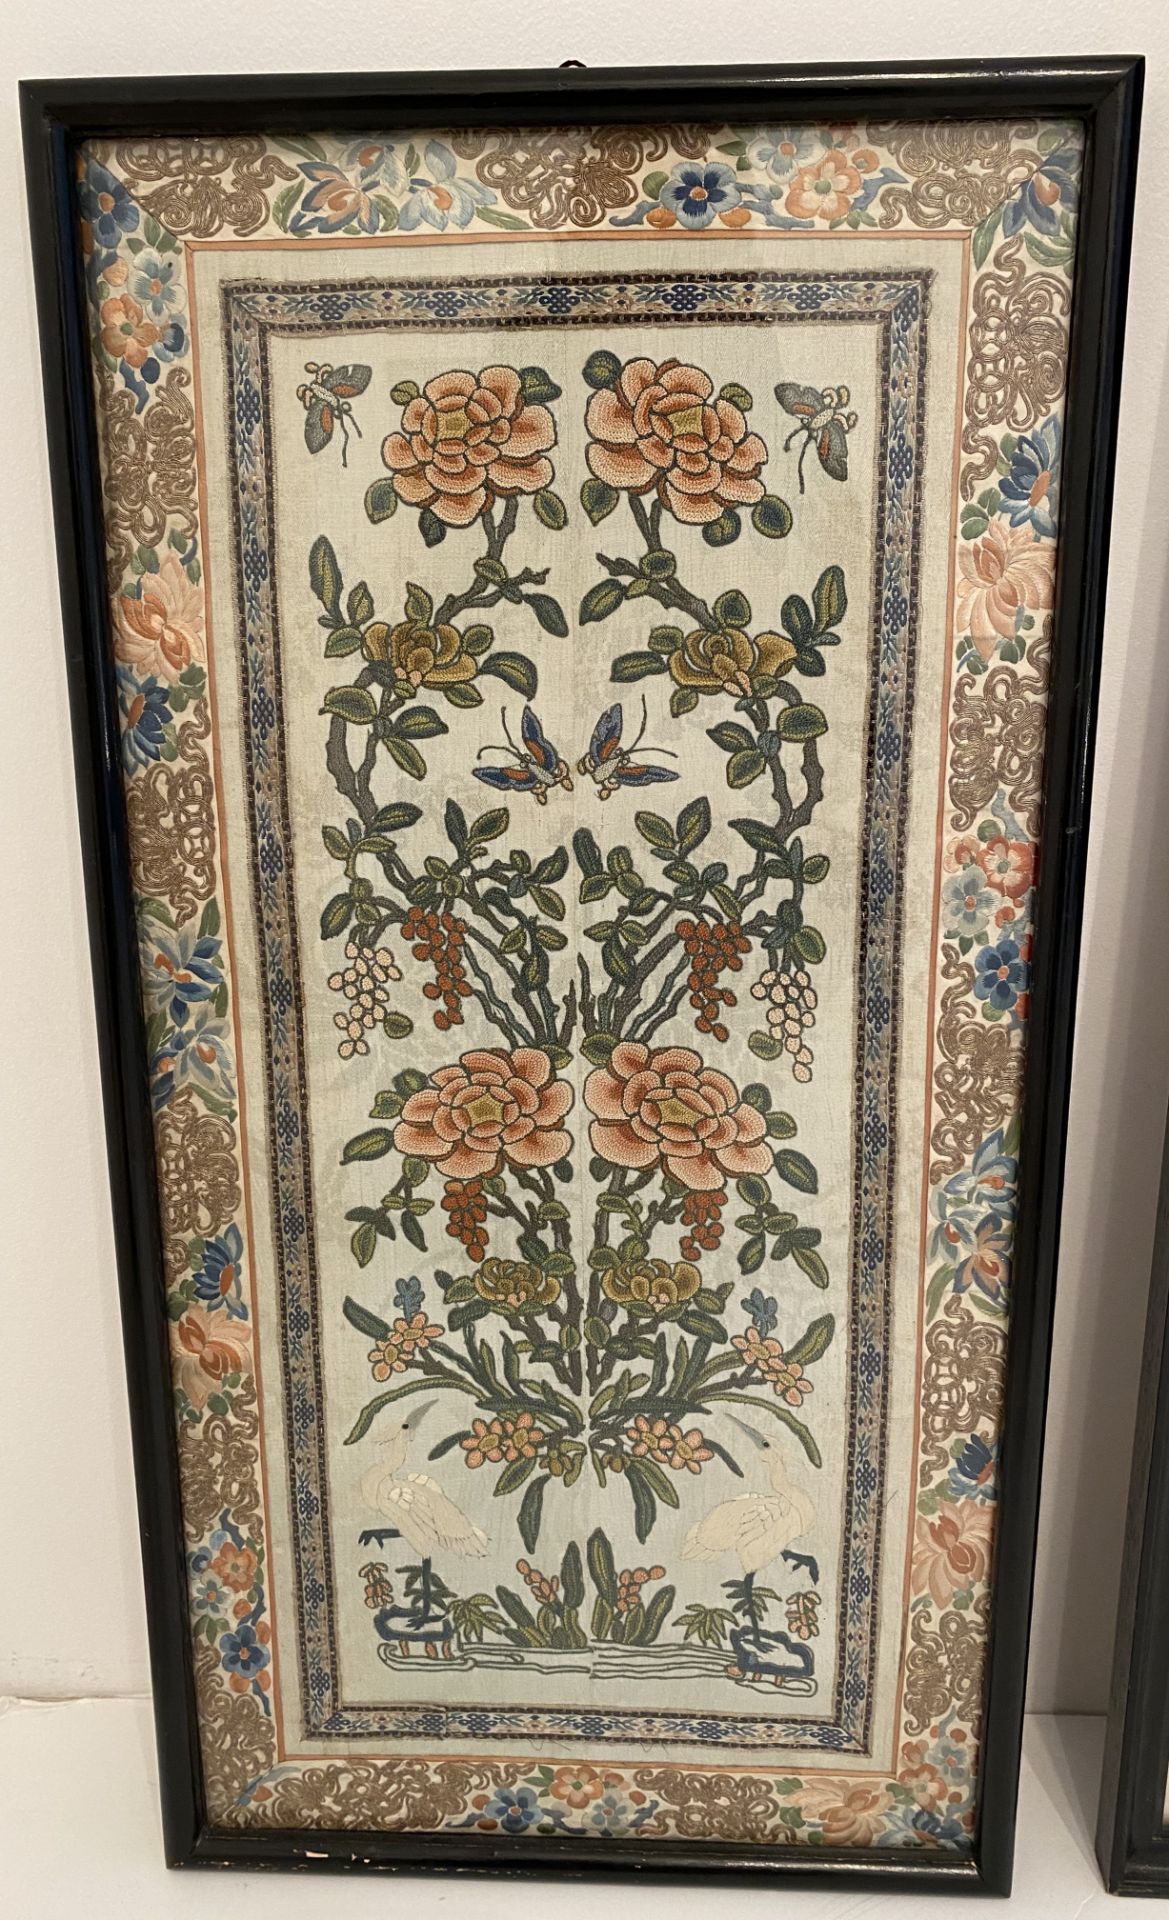 Lot of 2 vintage Eastern Tapestries framed - Image 2 of 5